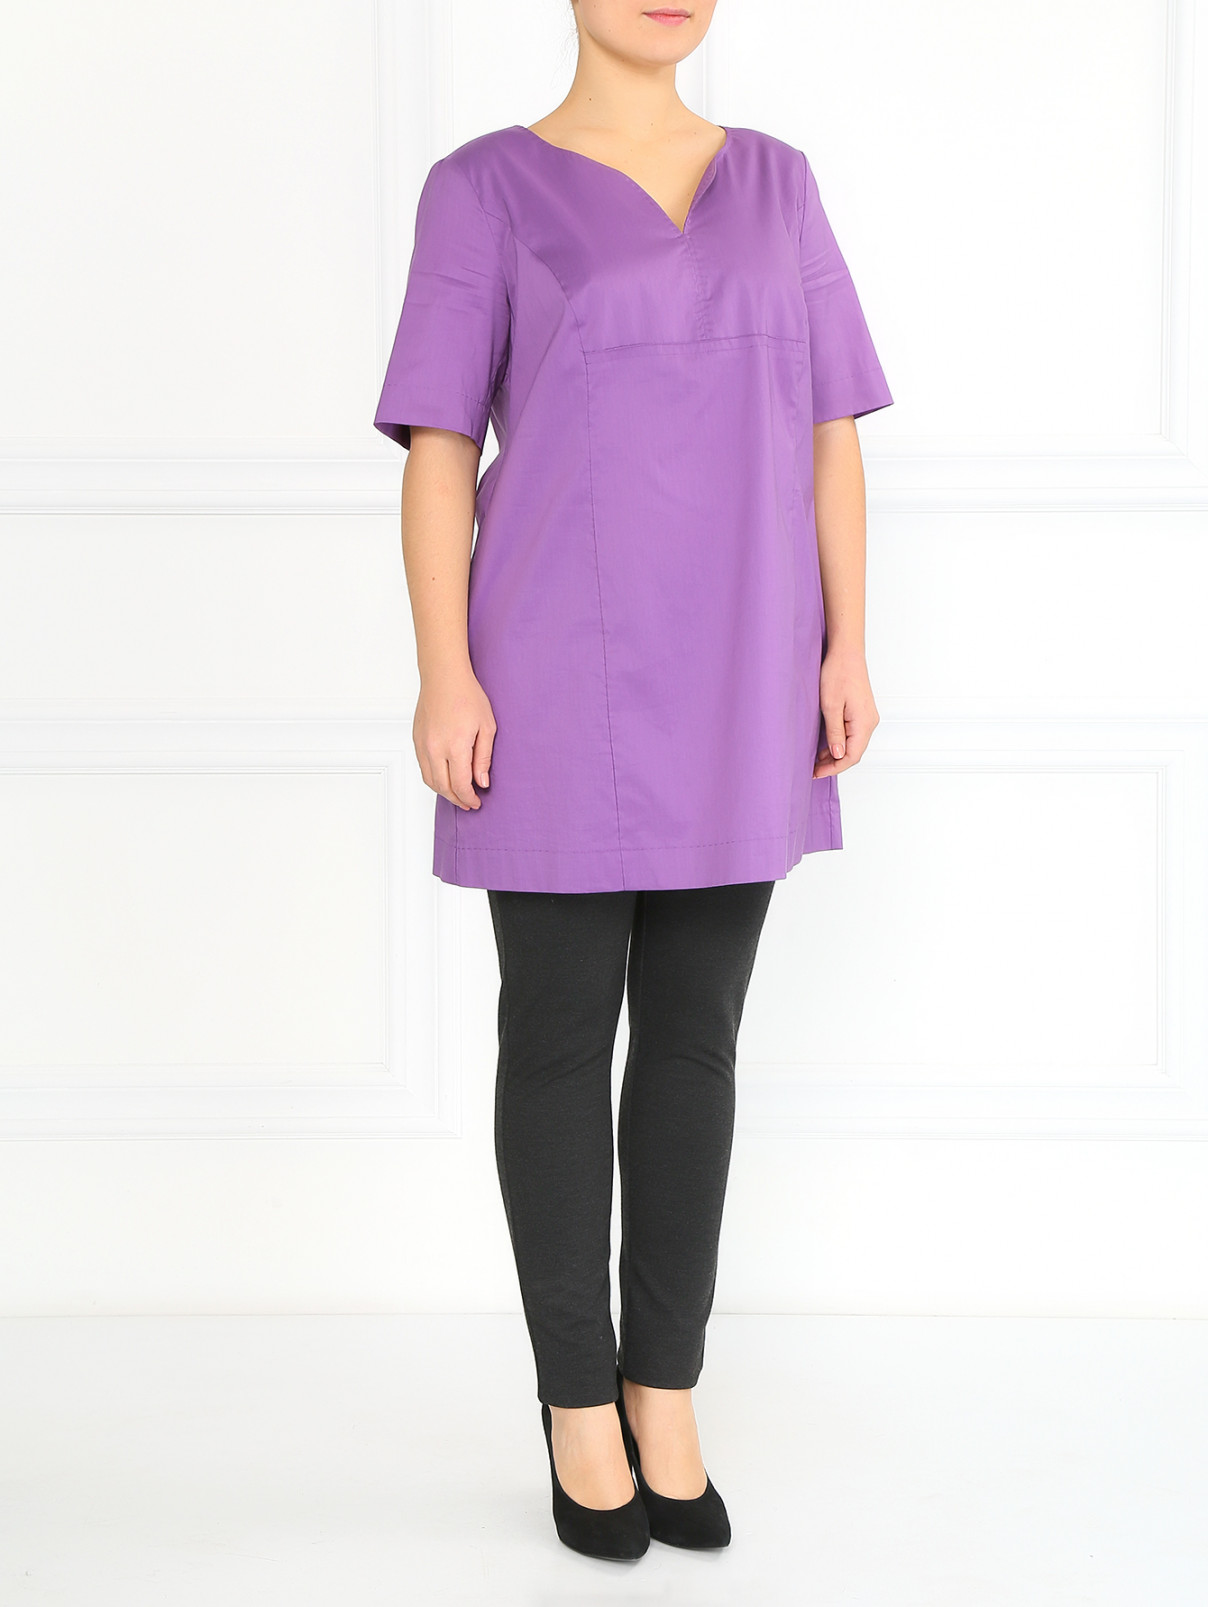 Платье из хлопка с коротким рукавом Marina Rinaldi  –  Модель Общий вид  – Цвет:  Фиолетовый